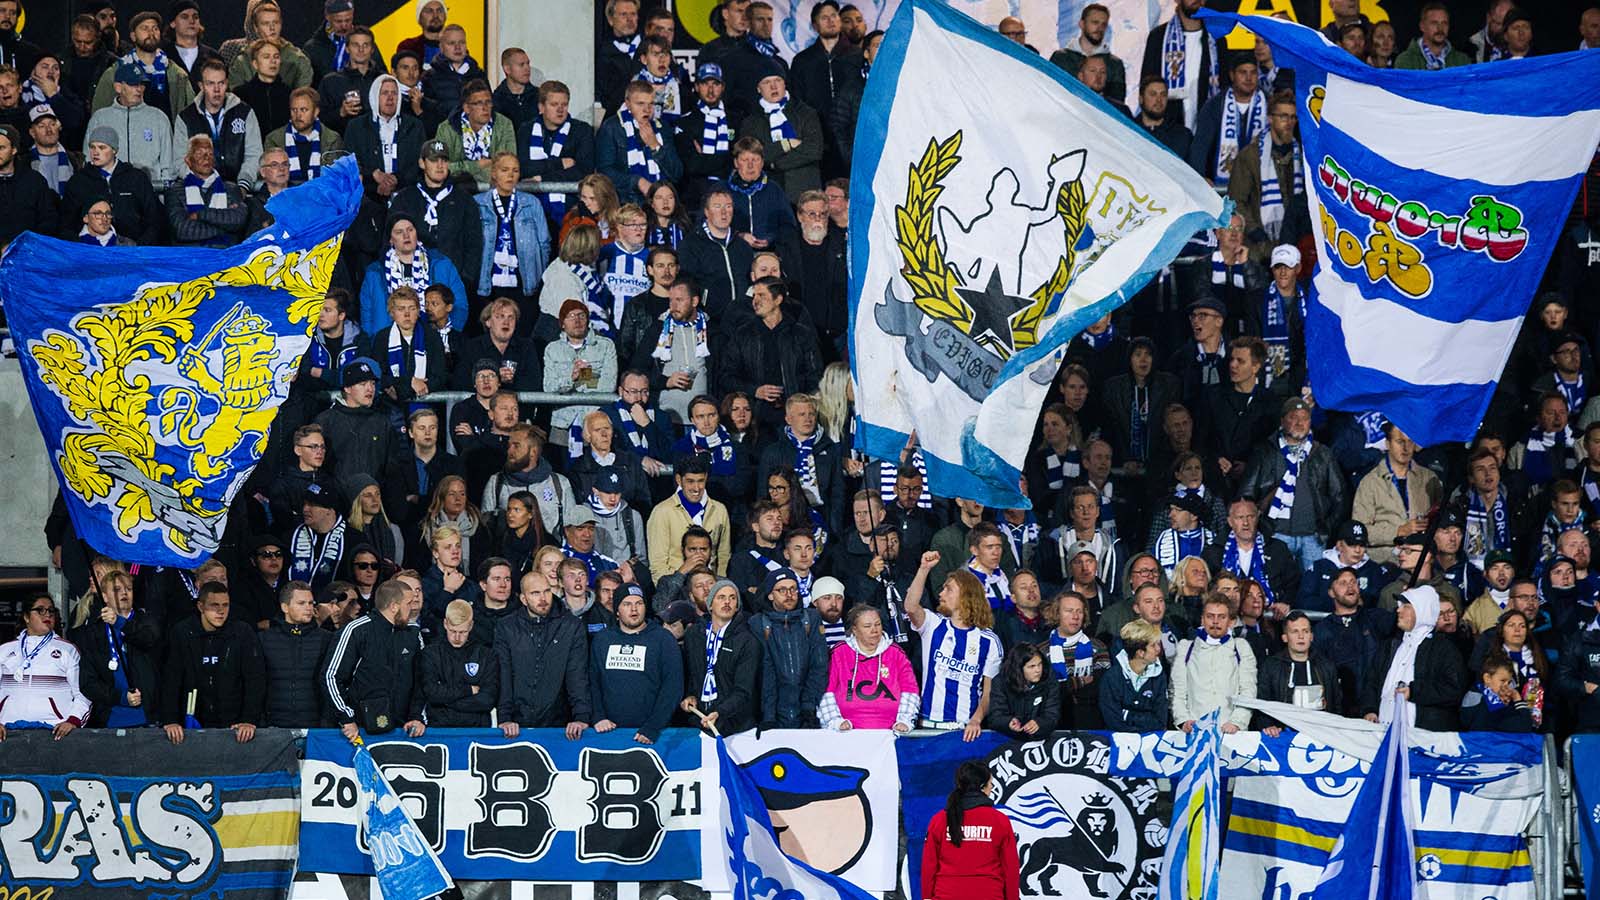 180924 IFK Göteborgs supportrar under fotbollsmatchen i allsvenskan mellan Häcken och IFK Göteborg den 24 september 2018 i Göteborg. Foto: Michael Erichsen / BILDBYRÅN / Cop 89